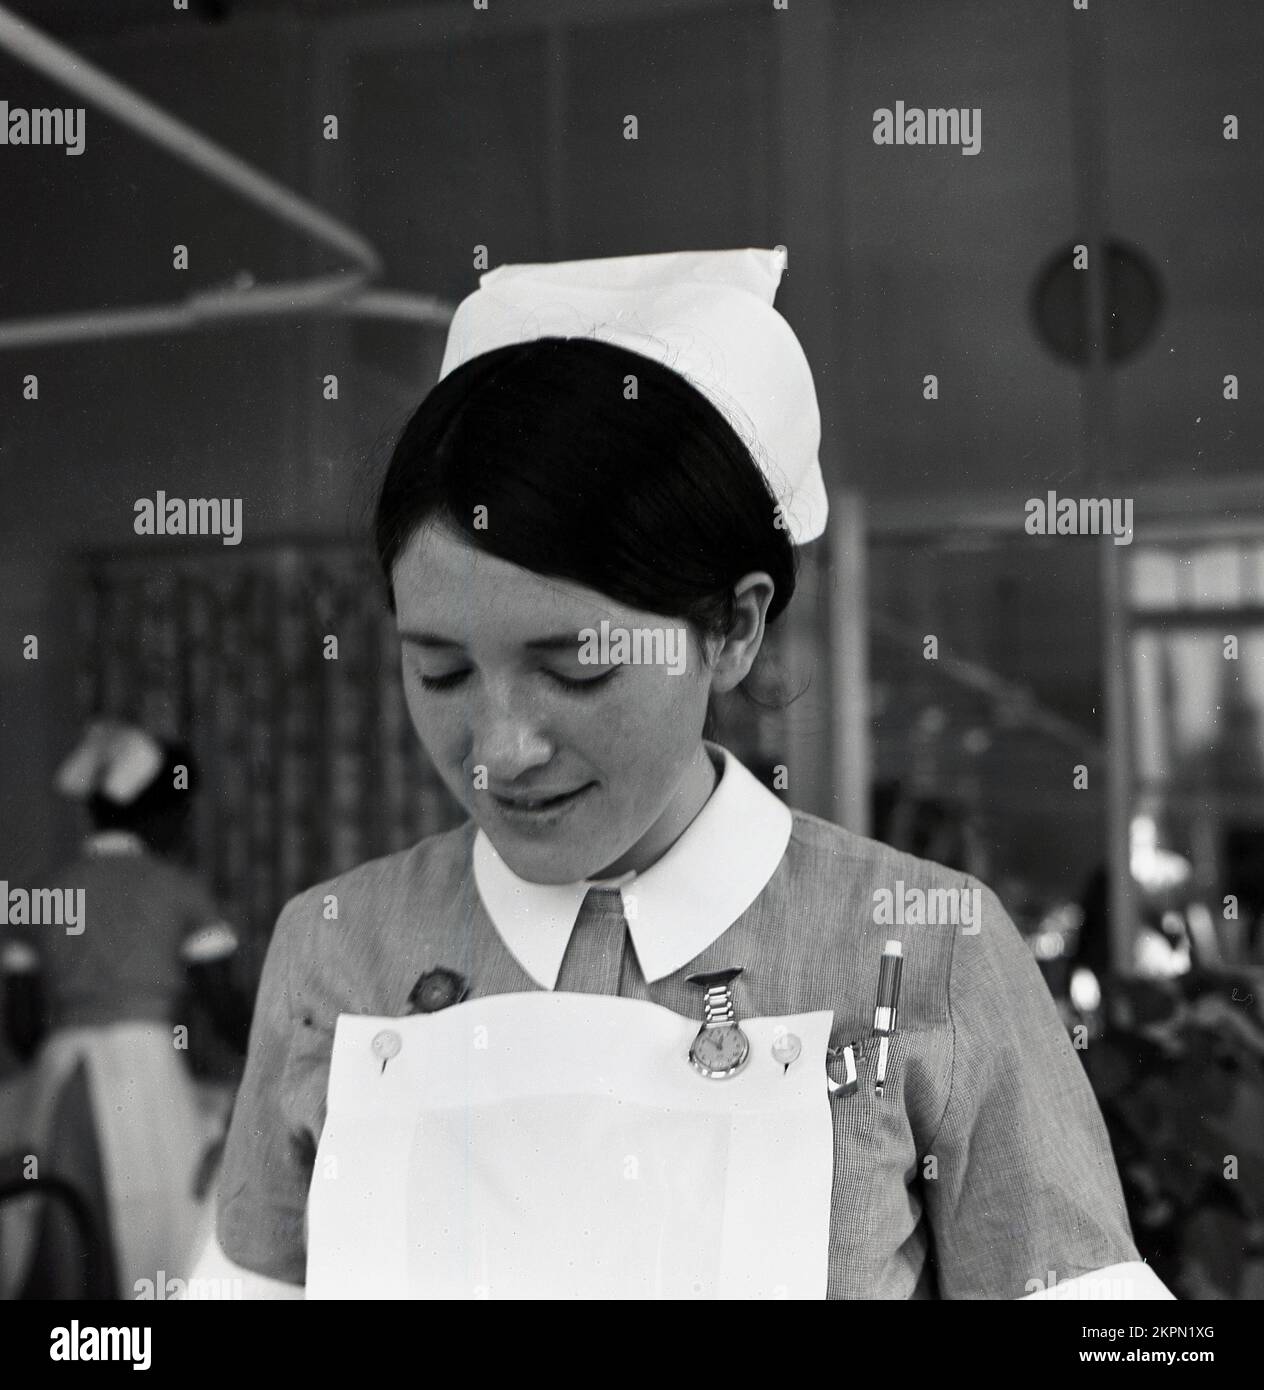 1969, storico, all'interno di un rione, una giovane infermiera femminile, Warwick Hospital, Inghilterra, Regno Unito. Foto Stock